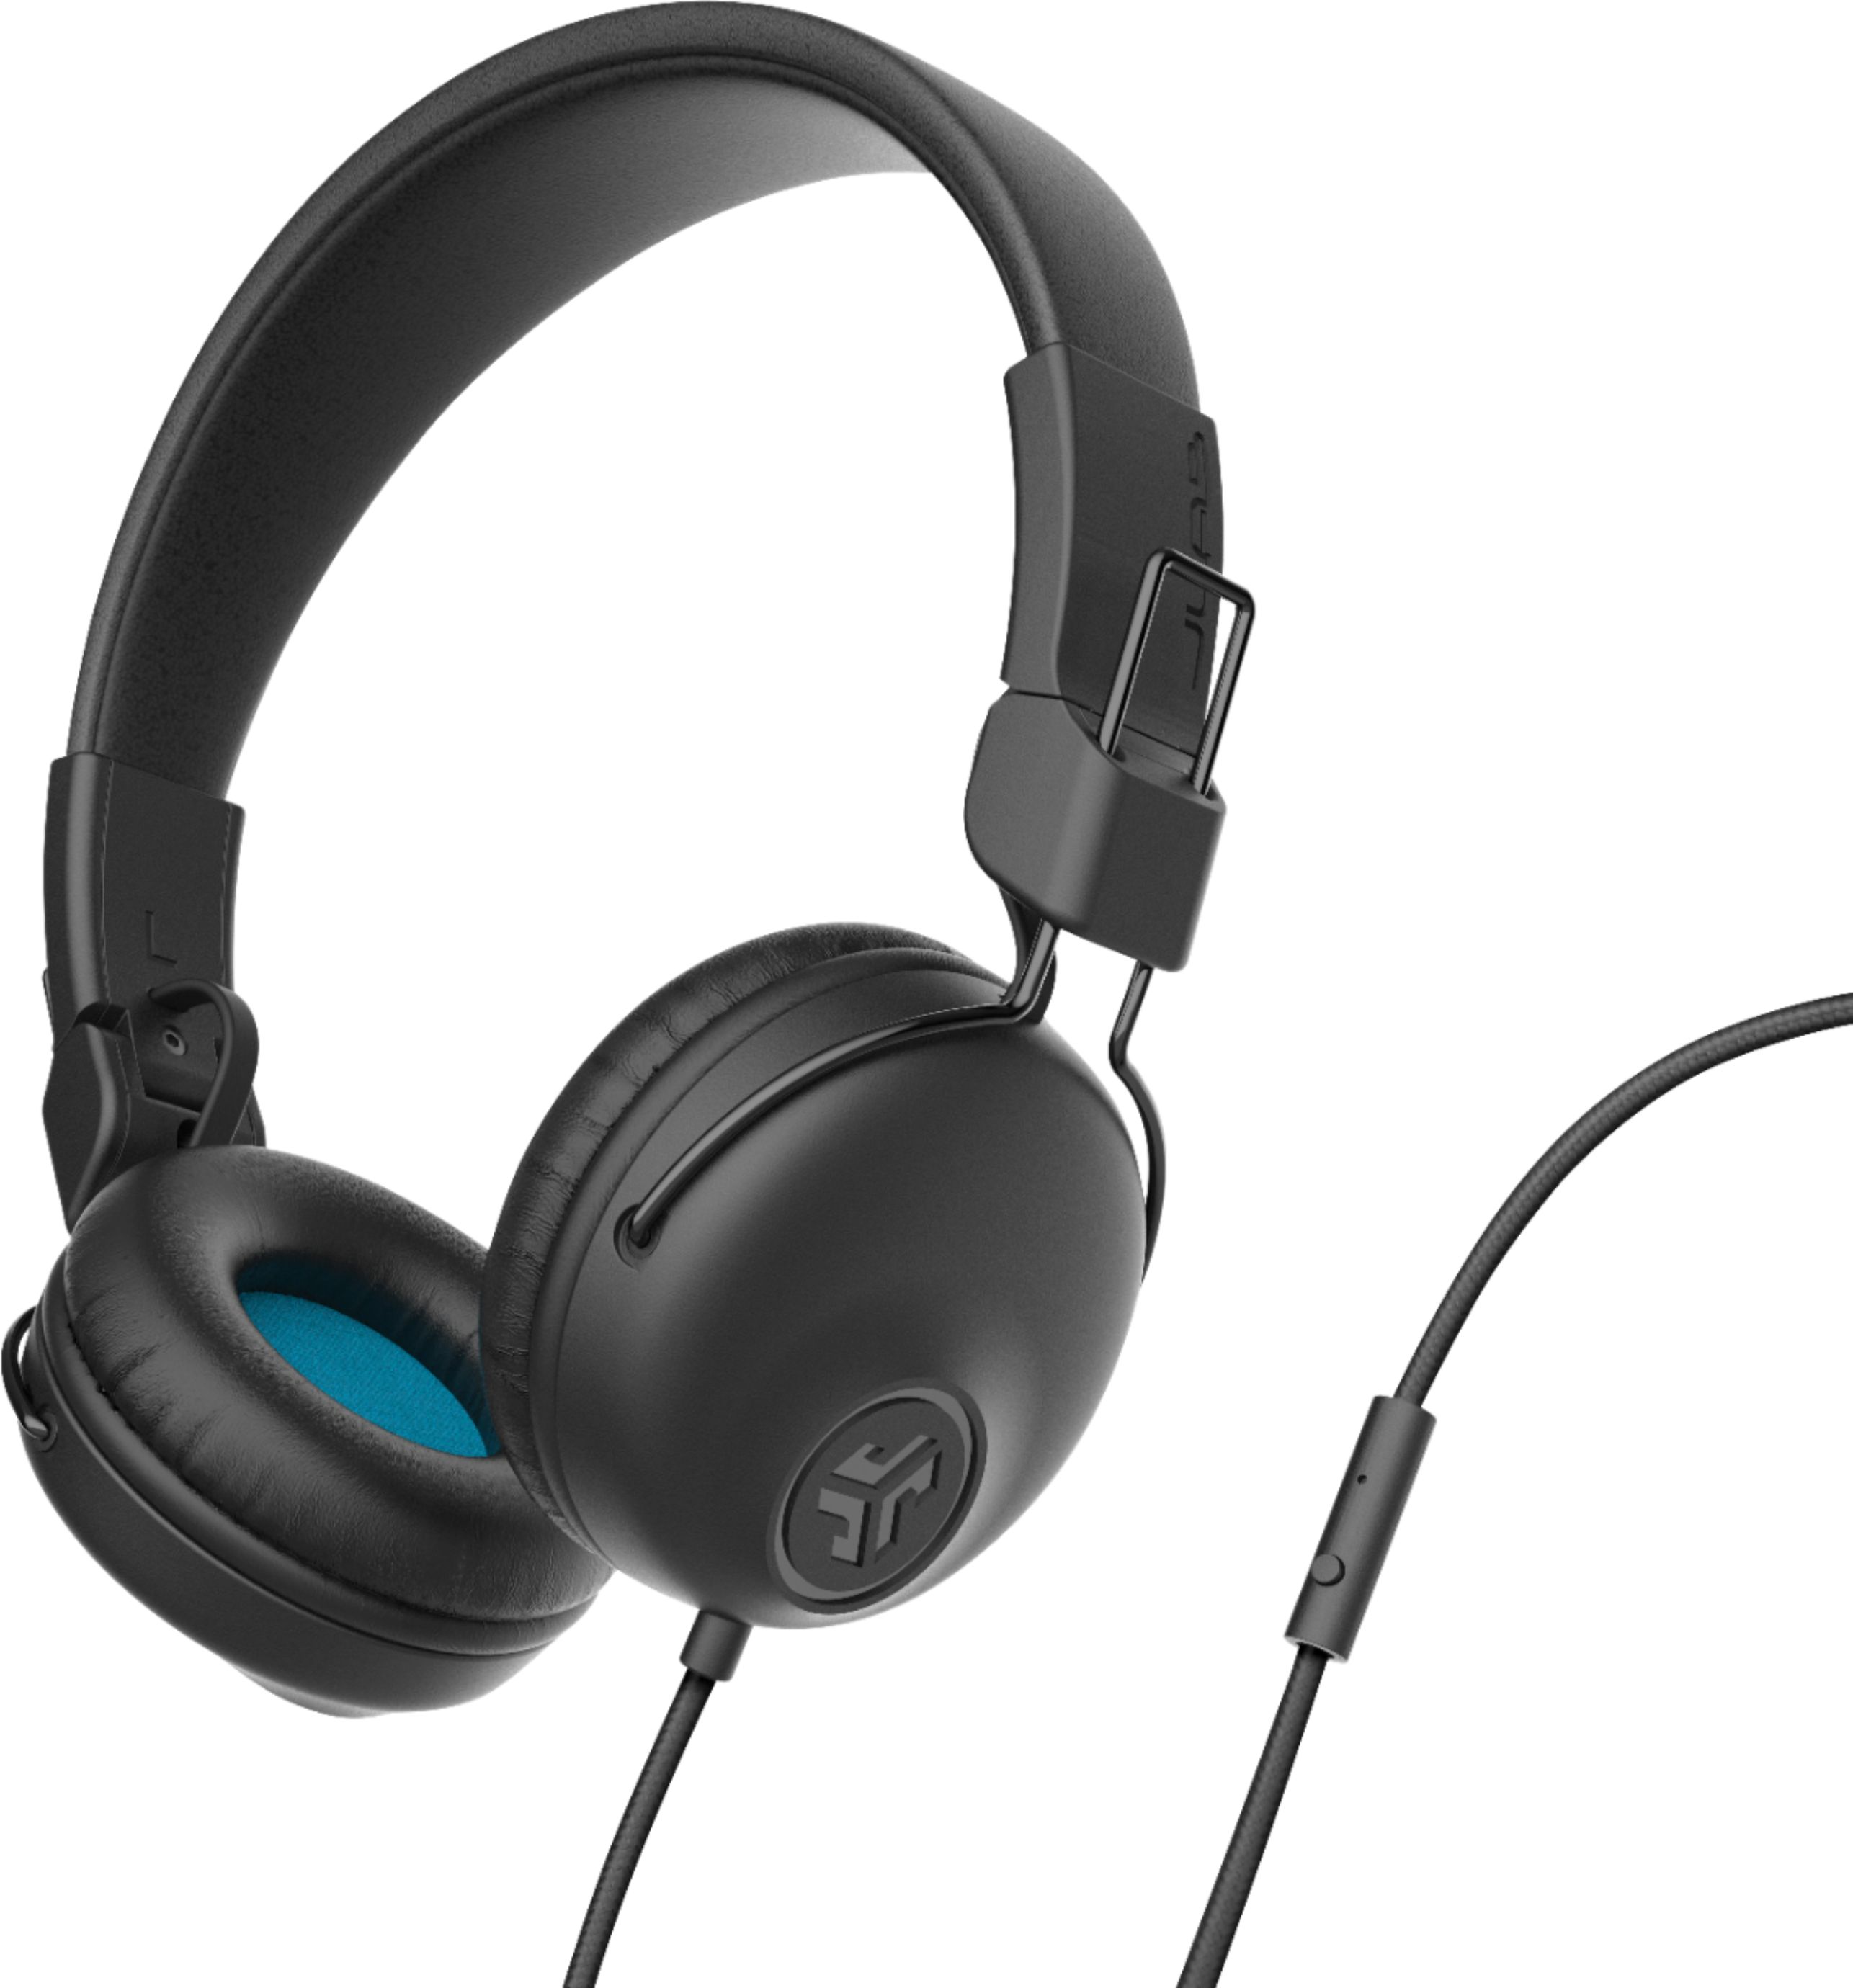 JLab Studio Wired On-Ear Headphones Black HASTUDIORBLK4 - Best Buy